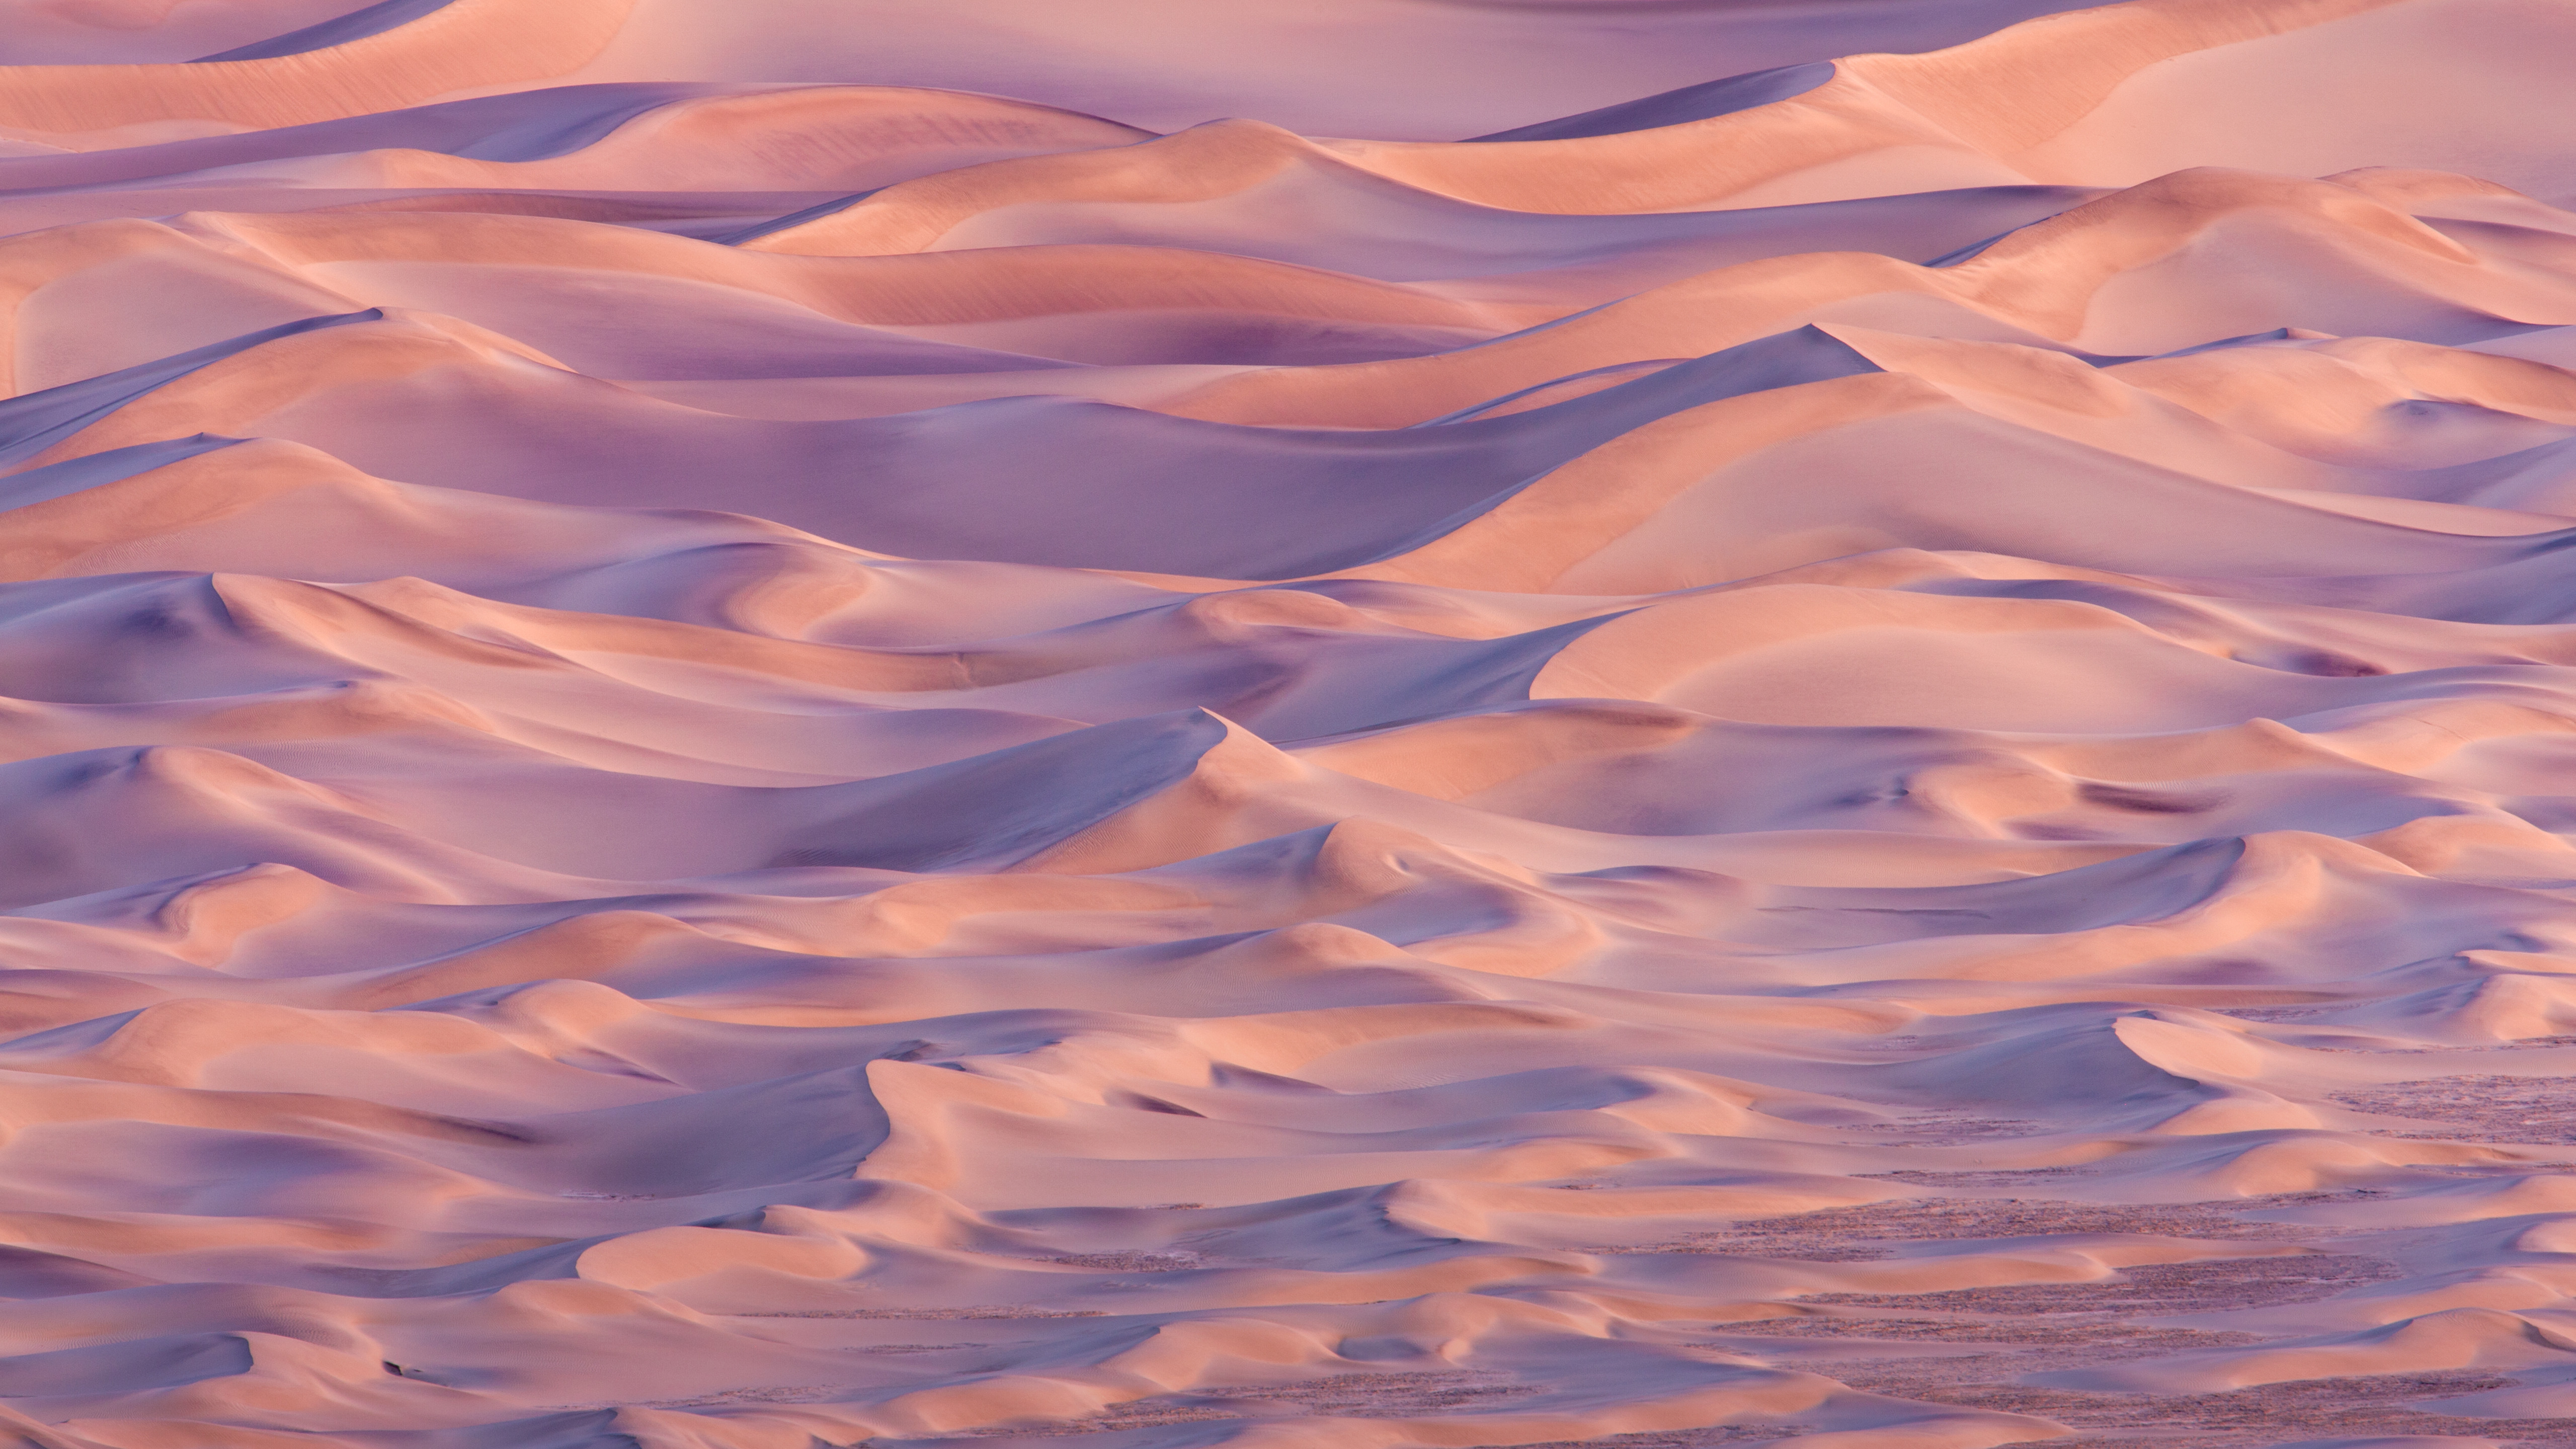 Wallpaper yosemite, 5k, 4k wallpaper, desert, sand, OSX, apple, sunset